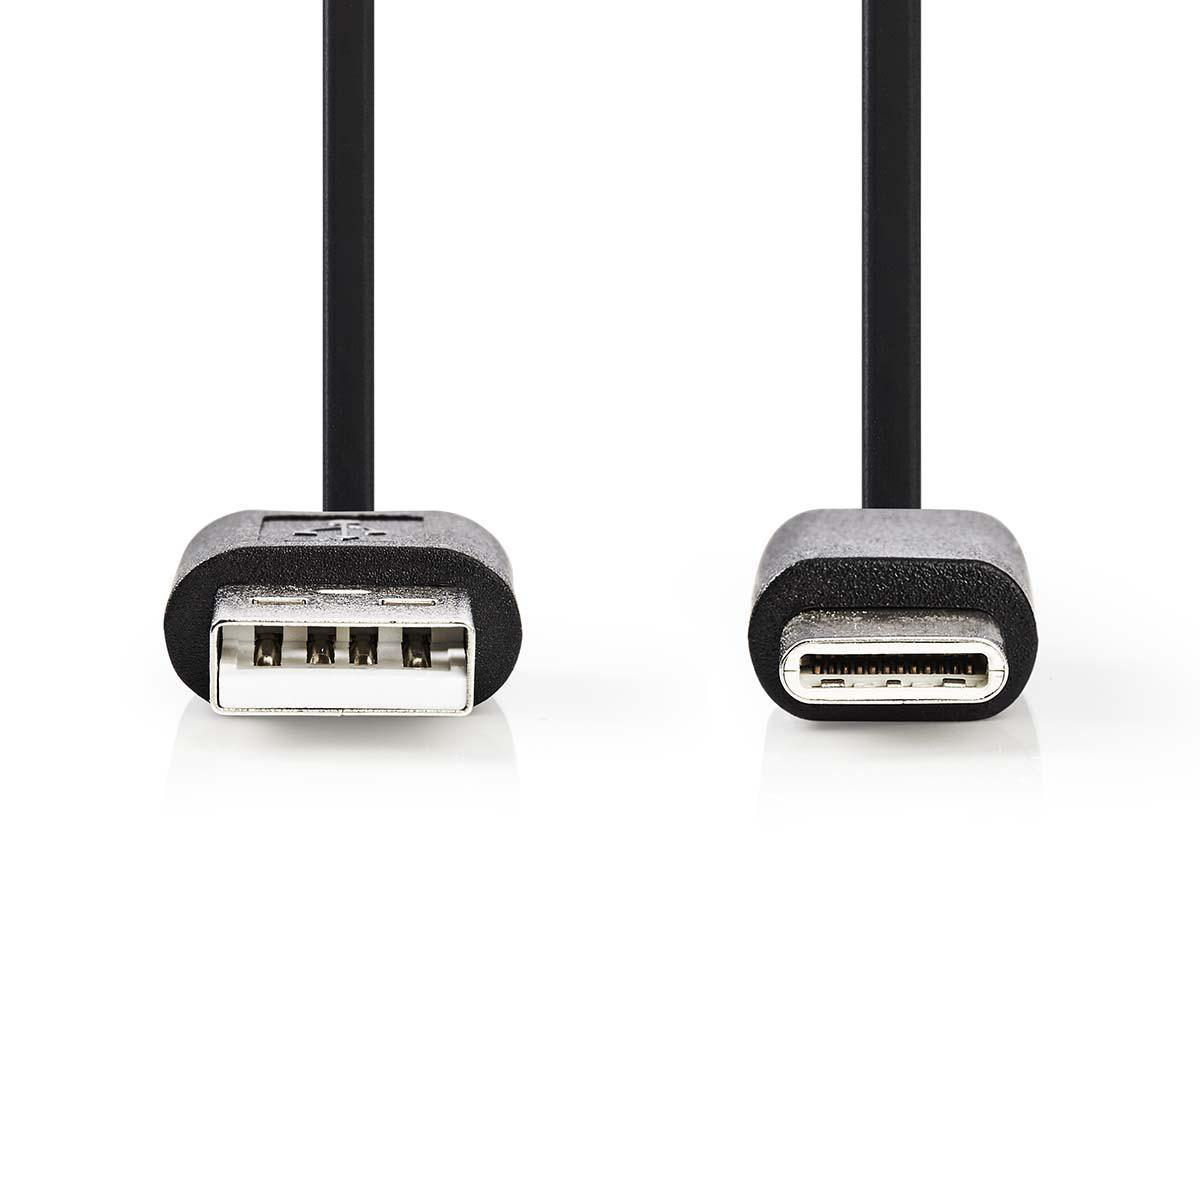 Nedis propojovací kabel USB 2.0 zástrčka USB A - zástrčka USB C, 1 m, černá (CCGP60600BK10)